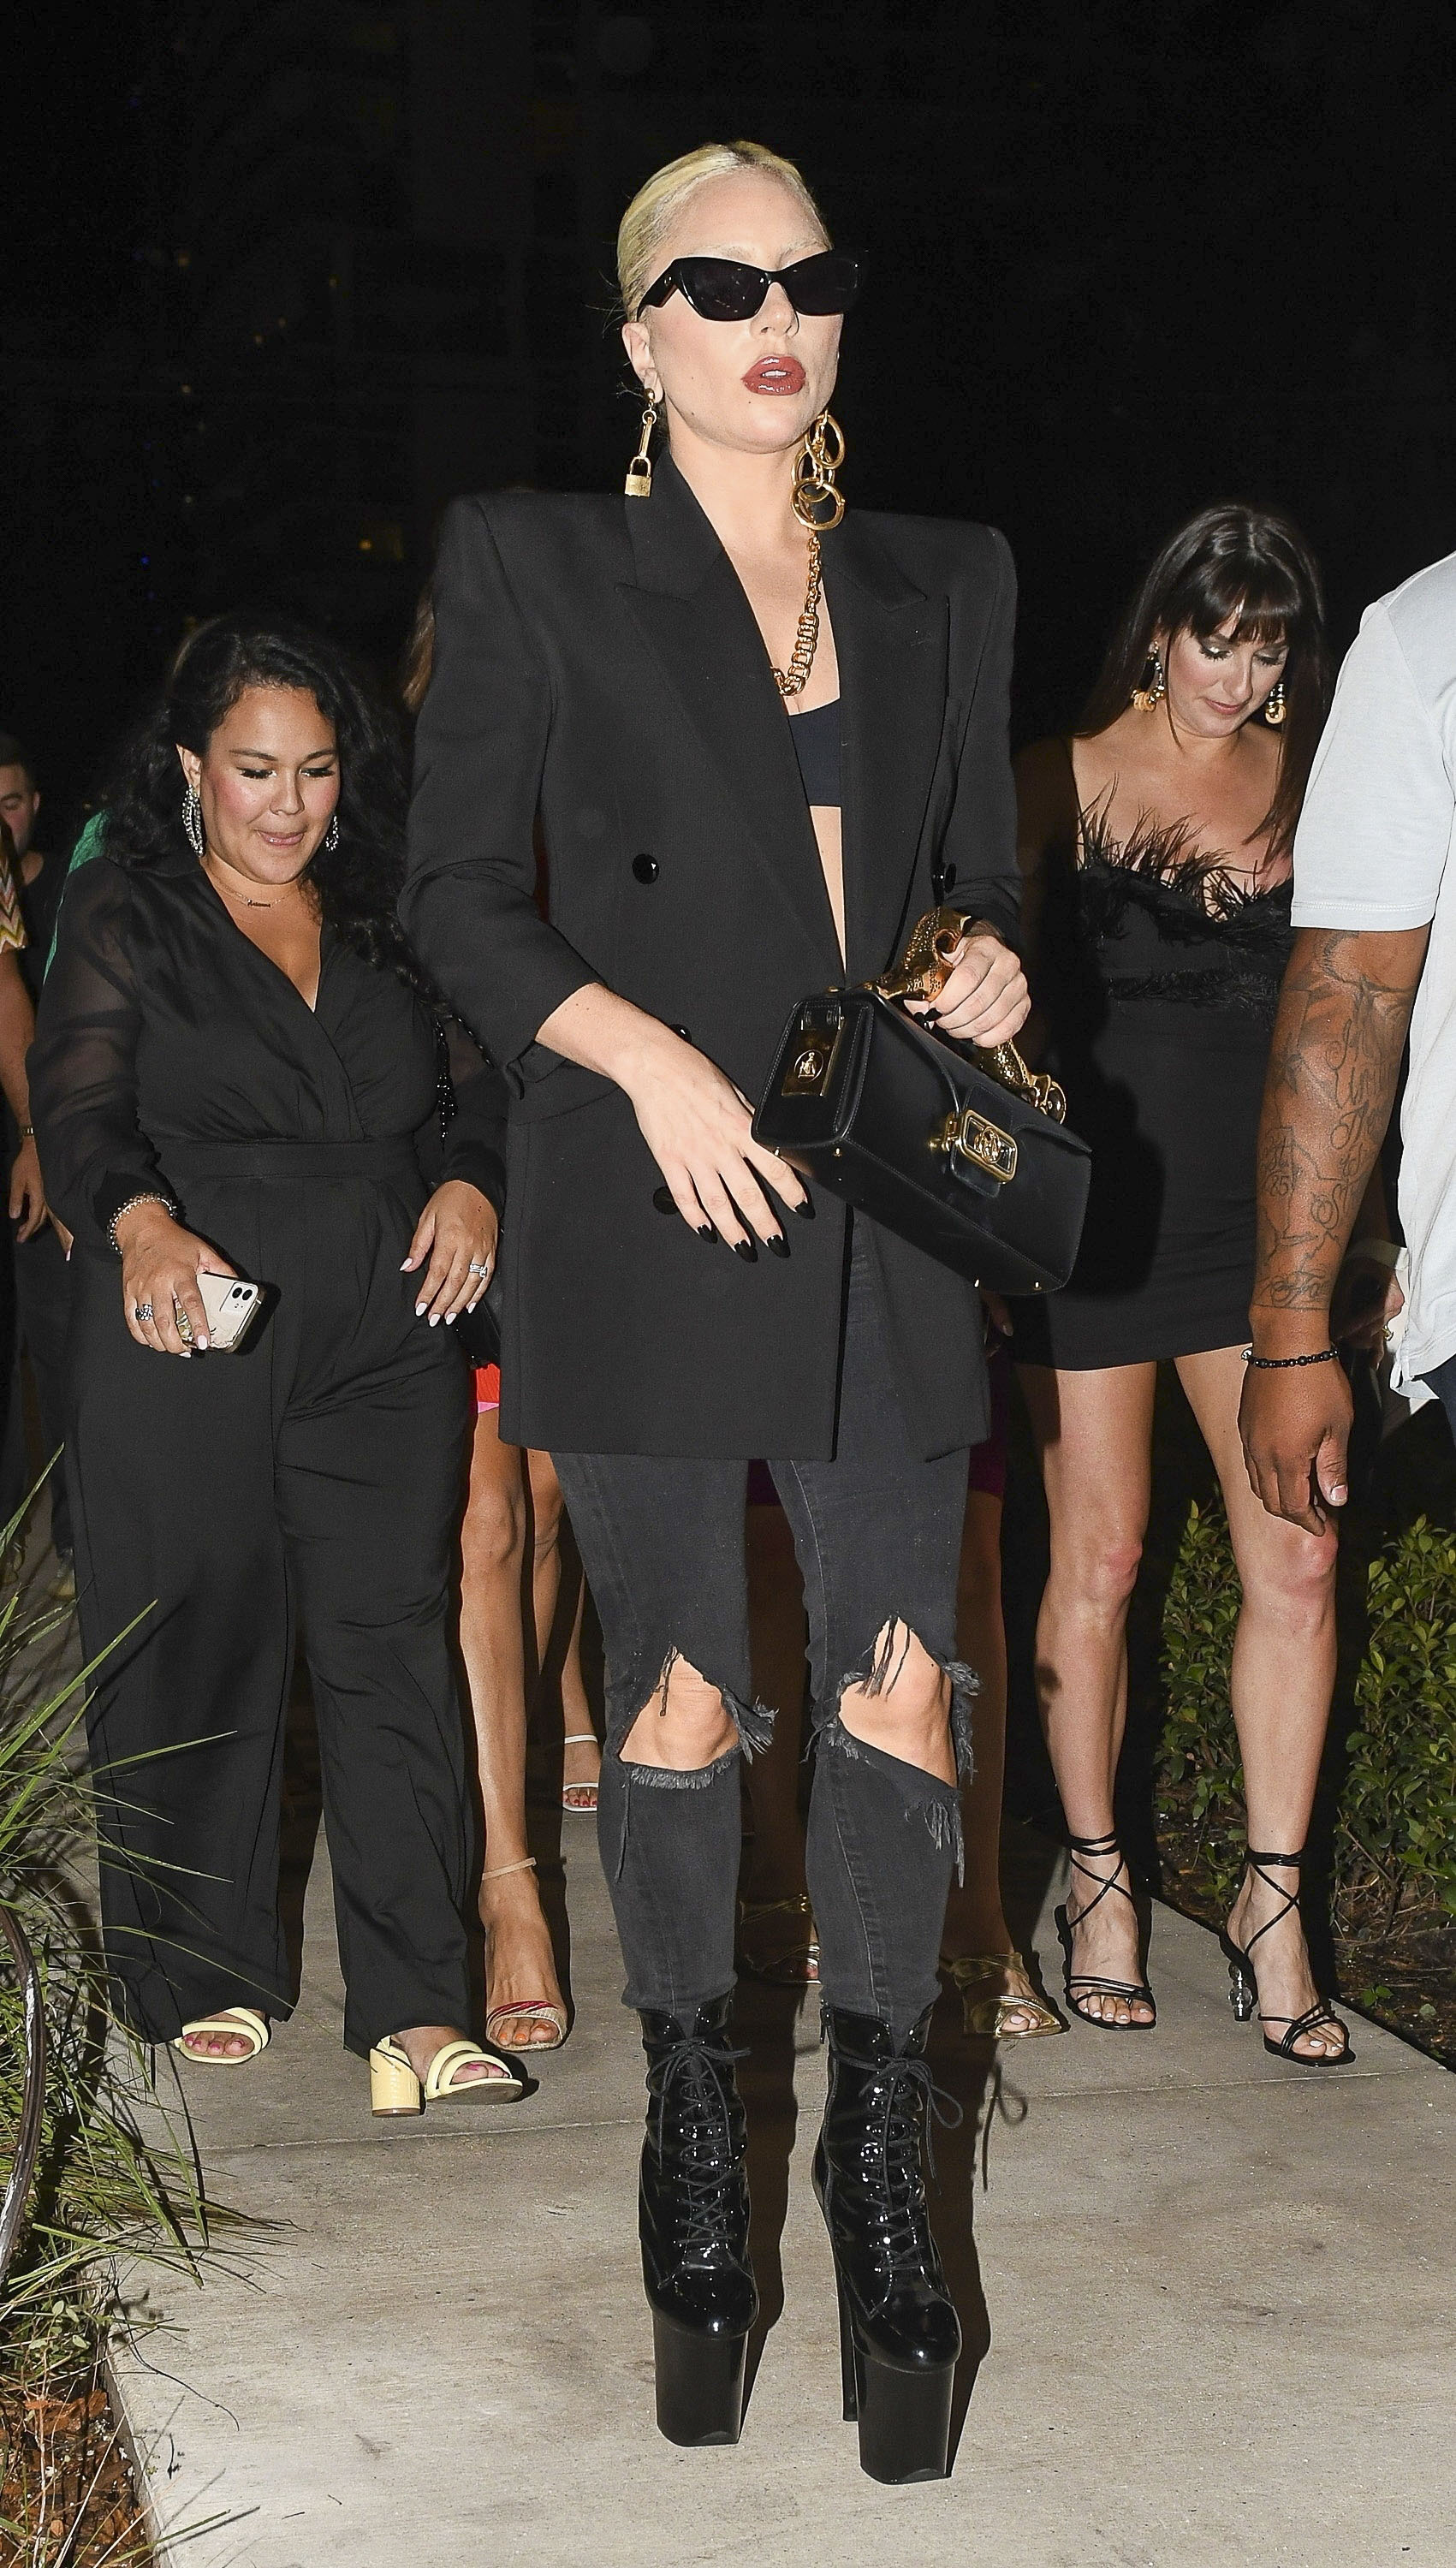 Lady Gaga increíble de negro con sus icónicas botas de plataforma mientras camina con amigos para ir a cenar en Miami